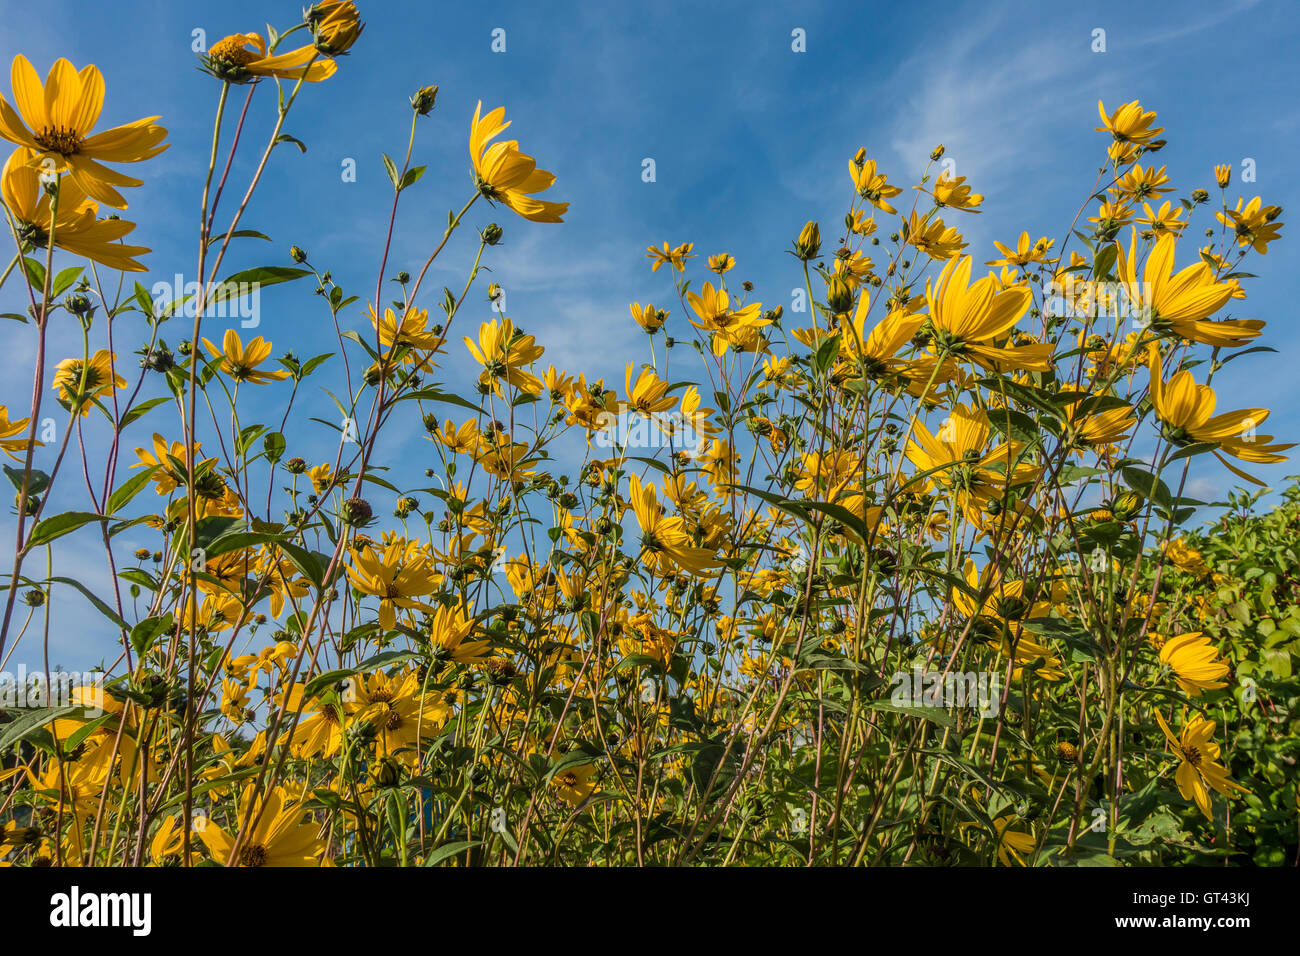 Sunflowers against Deep Blue Sky Stock Photo